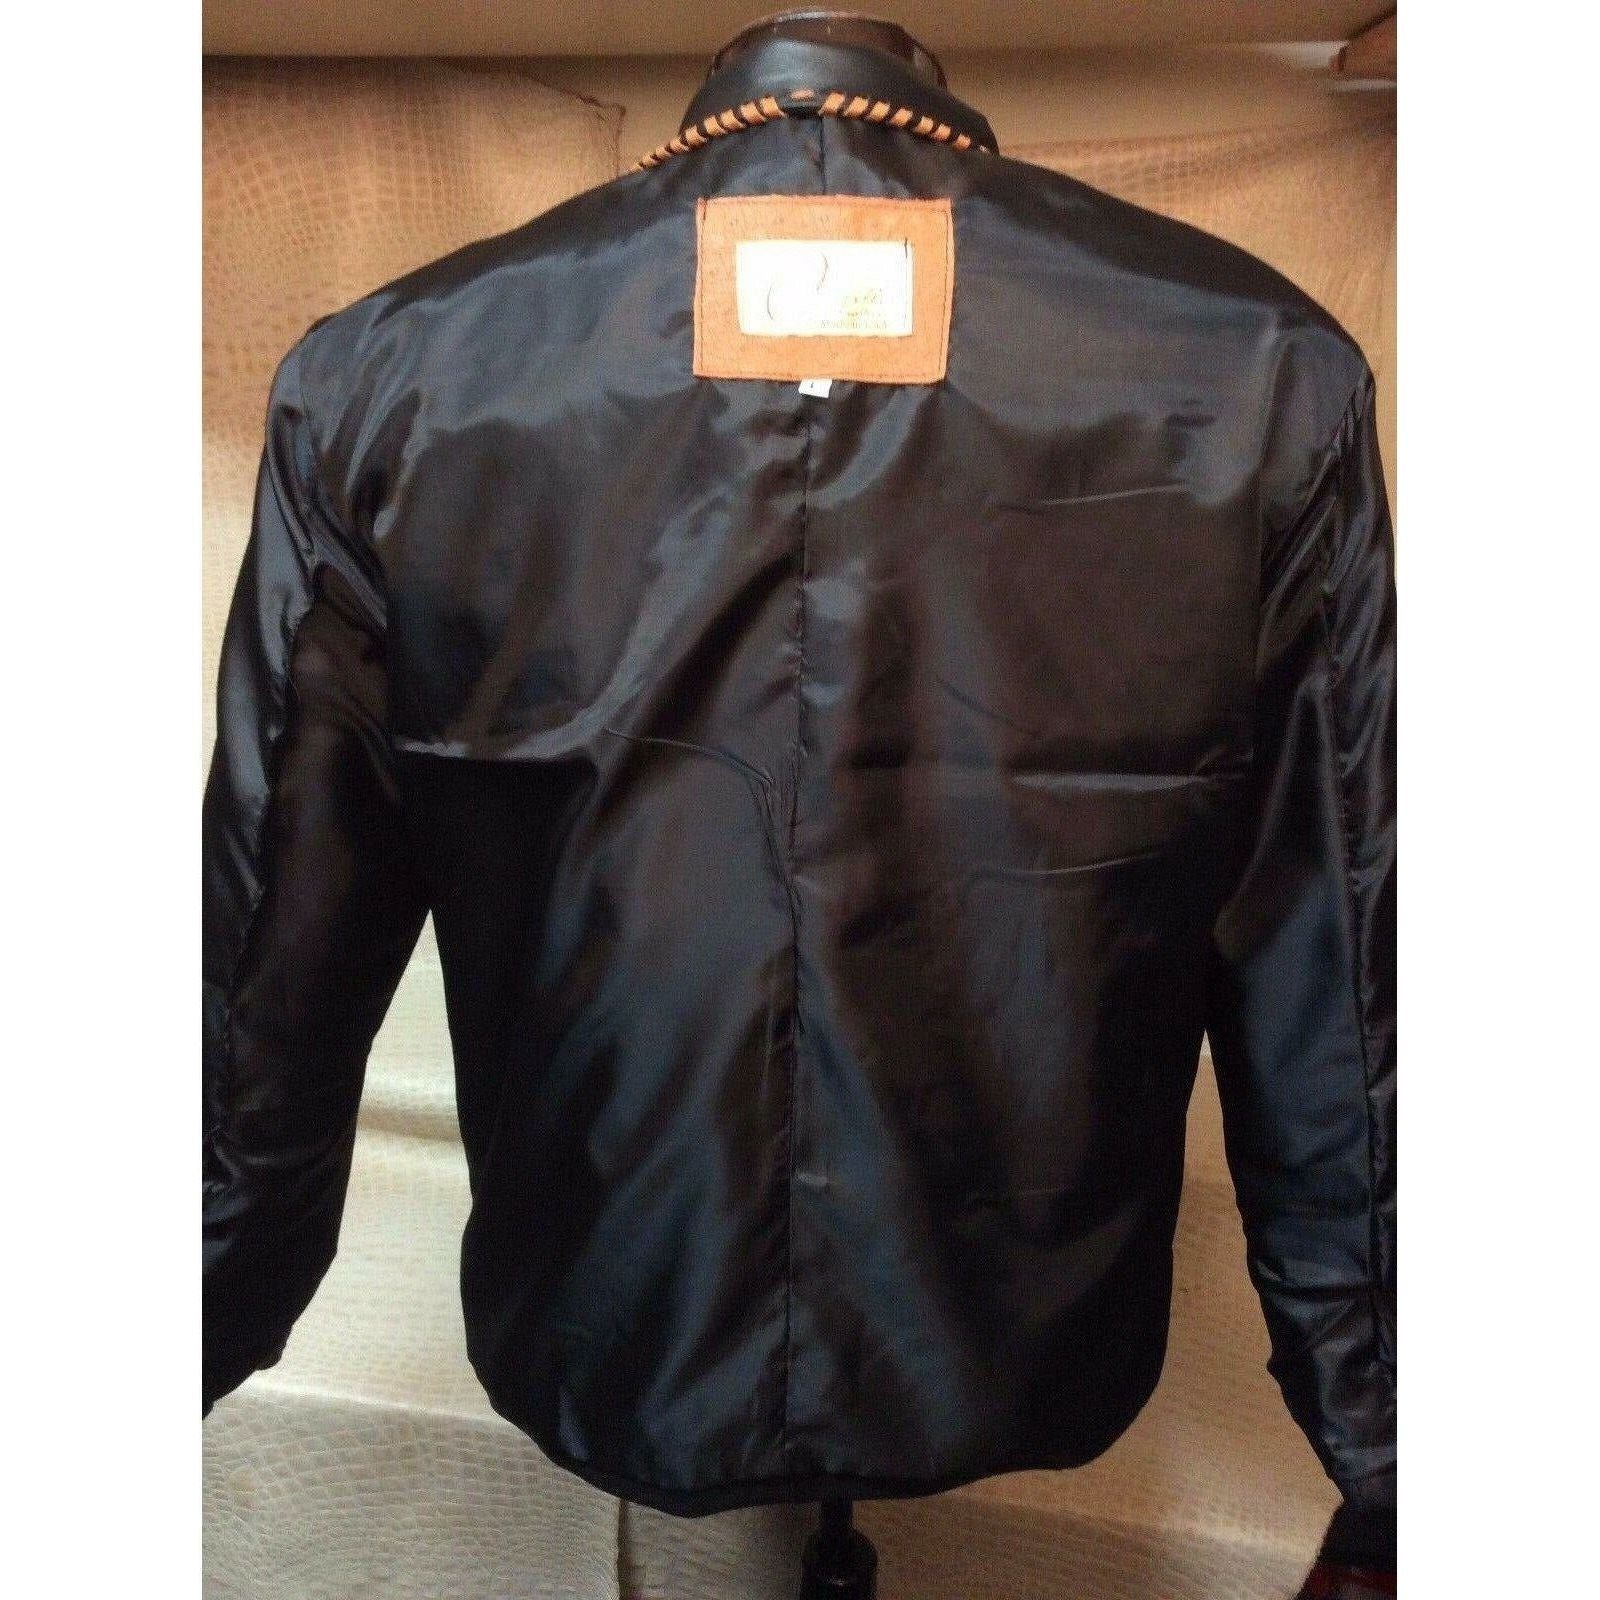 Ostrich Jacket Ostrich Leather Blazer Suit Coat for Men